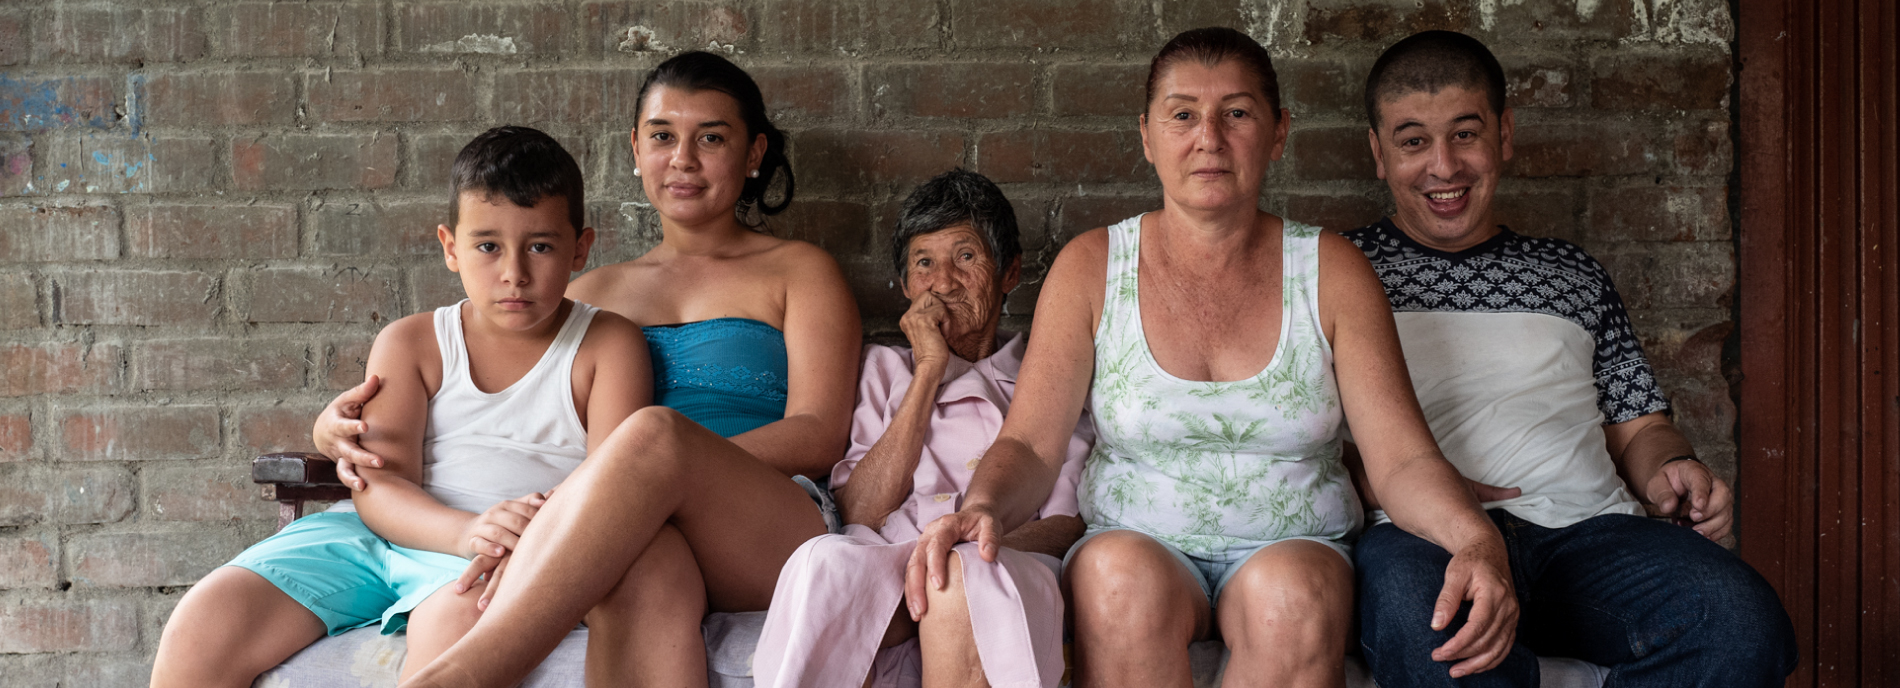 Juan Pablo Quintero, Sara Quintero, Soledad Quintero, Rosario Quintero, Yeison Quintero, pose for a group portrait in Ricaurte, Valle del Cauca, on July 28, 2018.